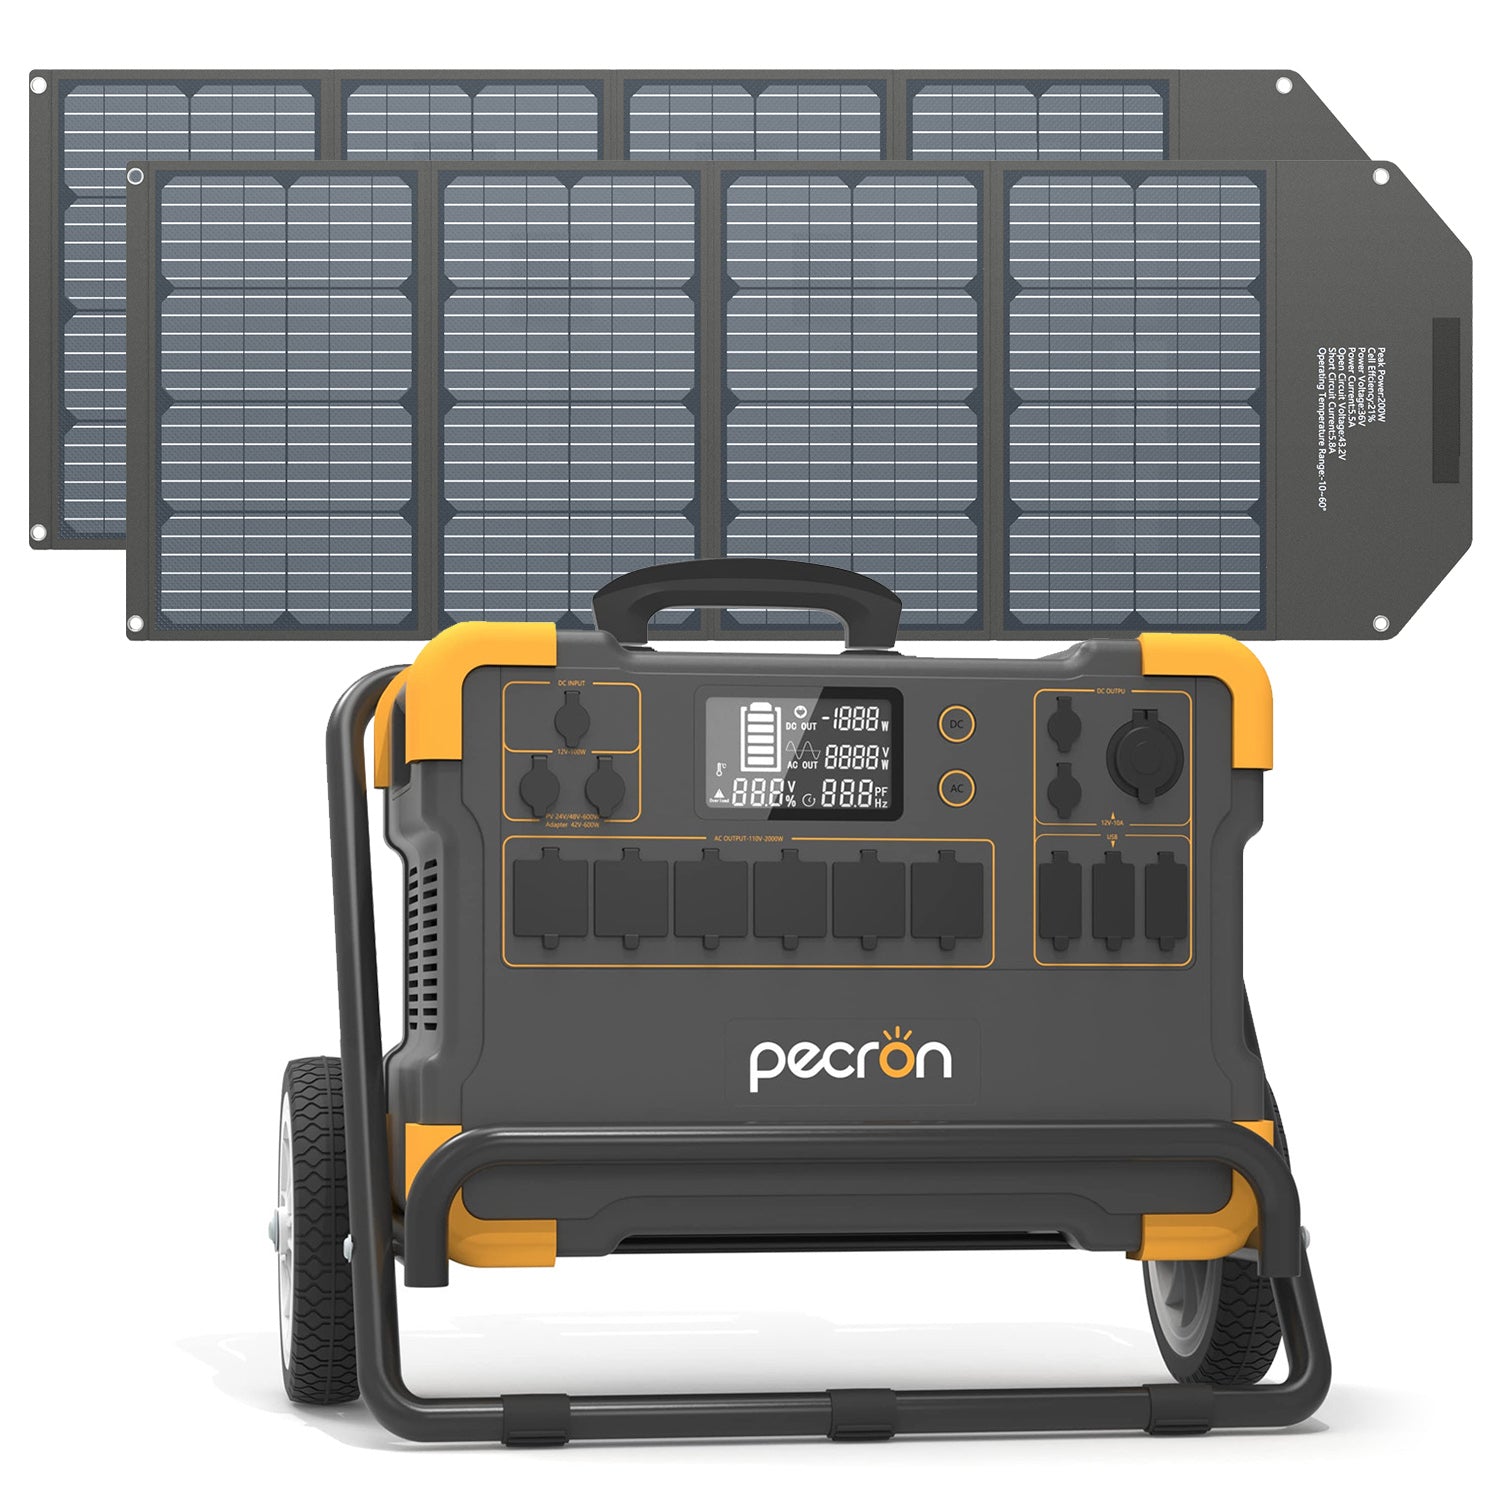 Pecron E3000 Solarsystem-Kit